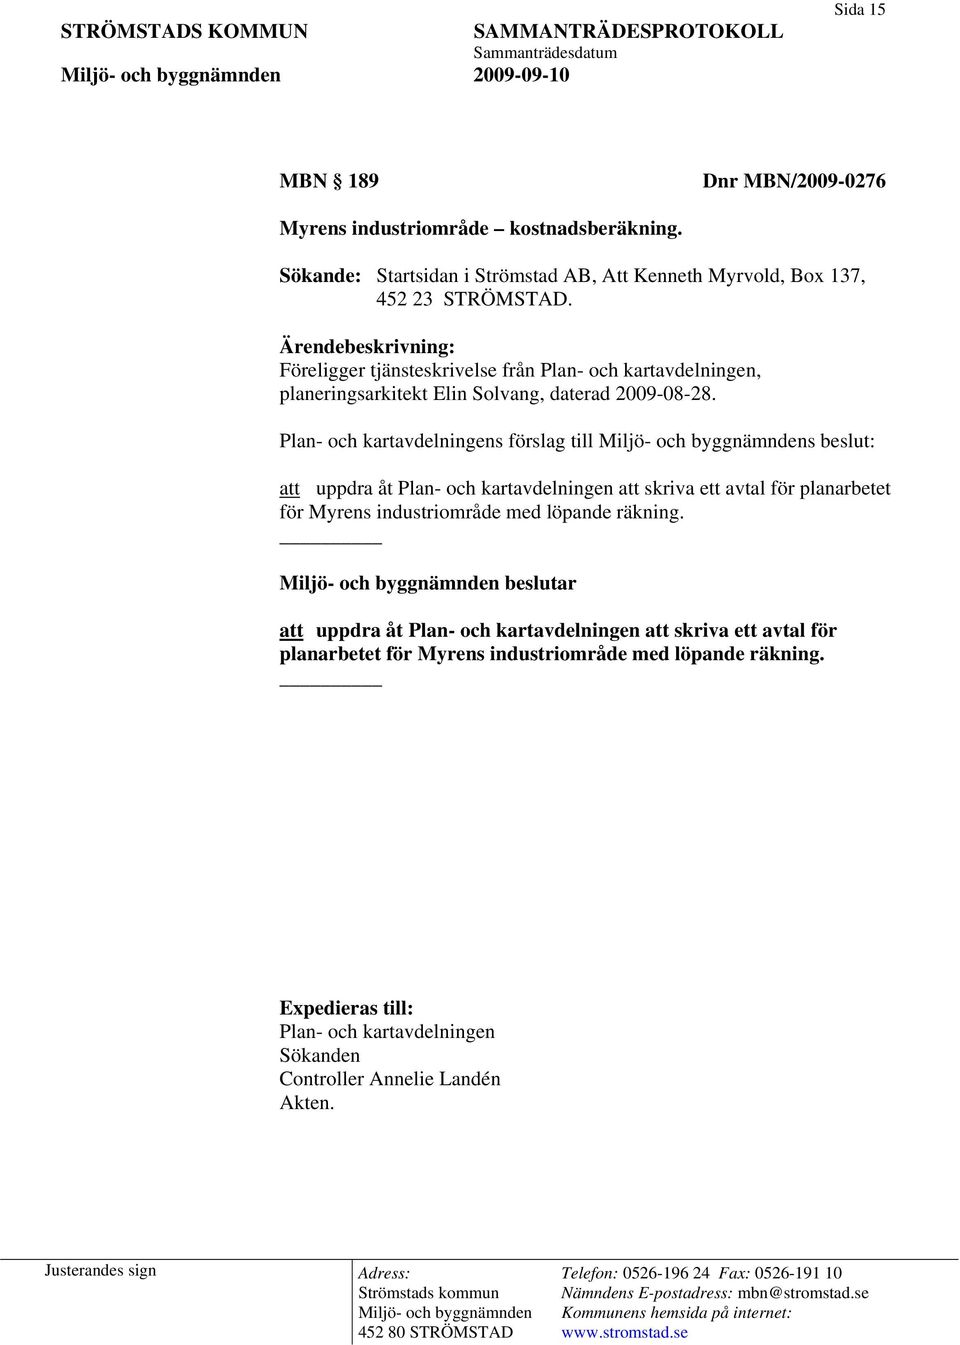 Ärendebeskrivning: Föreligger tjänsteskrivelse från Plan- och kartavdelningen, planeringsarkitekt Elin Solvang, daterad 2009-08-28.